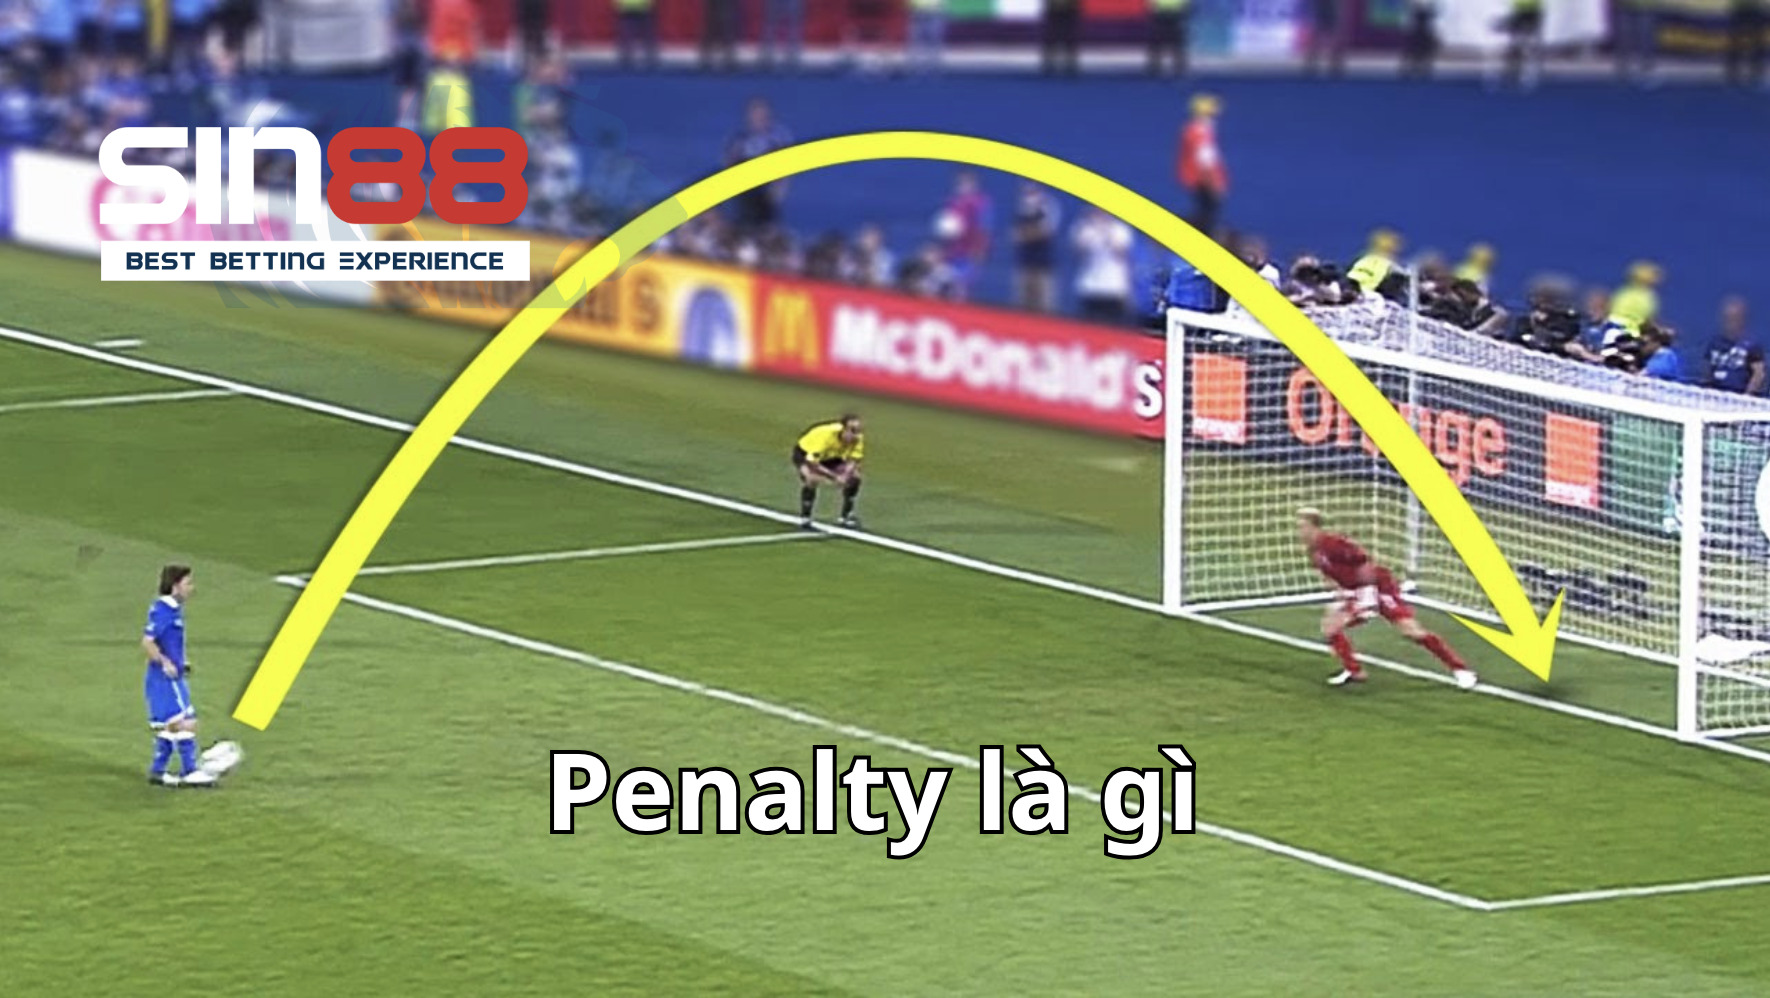 Luật áp dụng cầu thủ thực hiện đá phạt Penalty là gì?